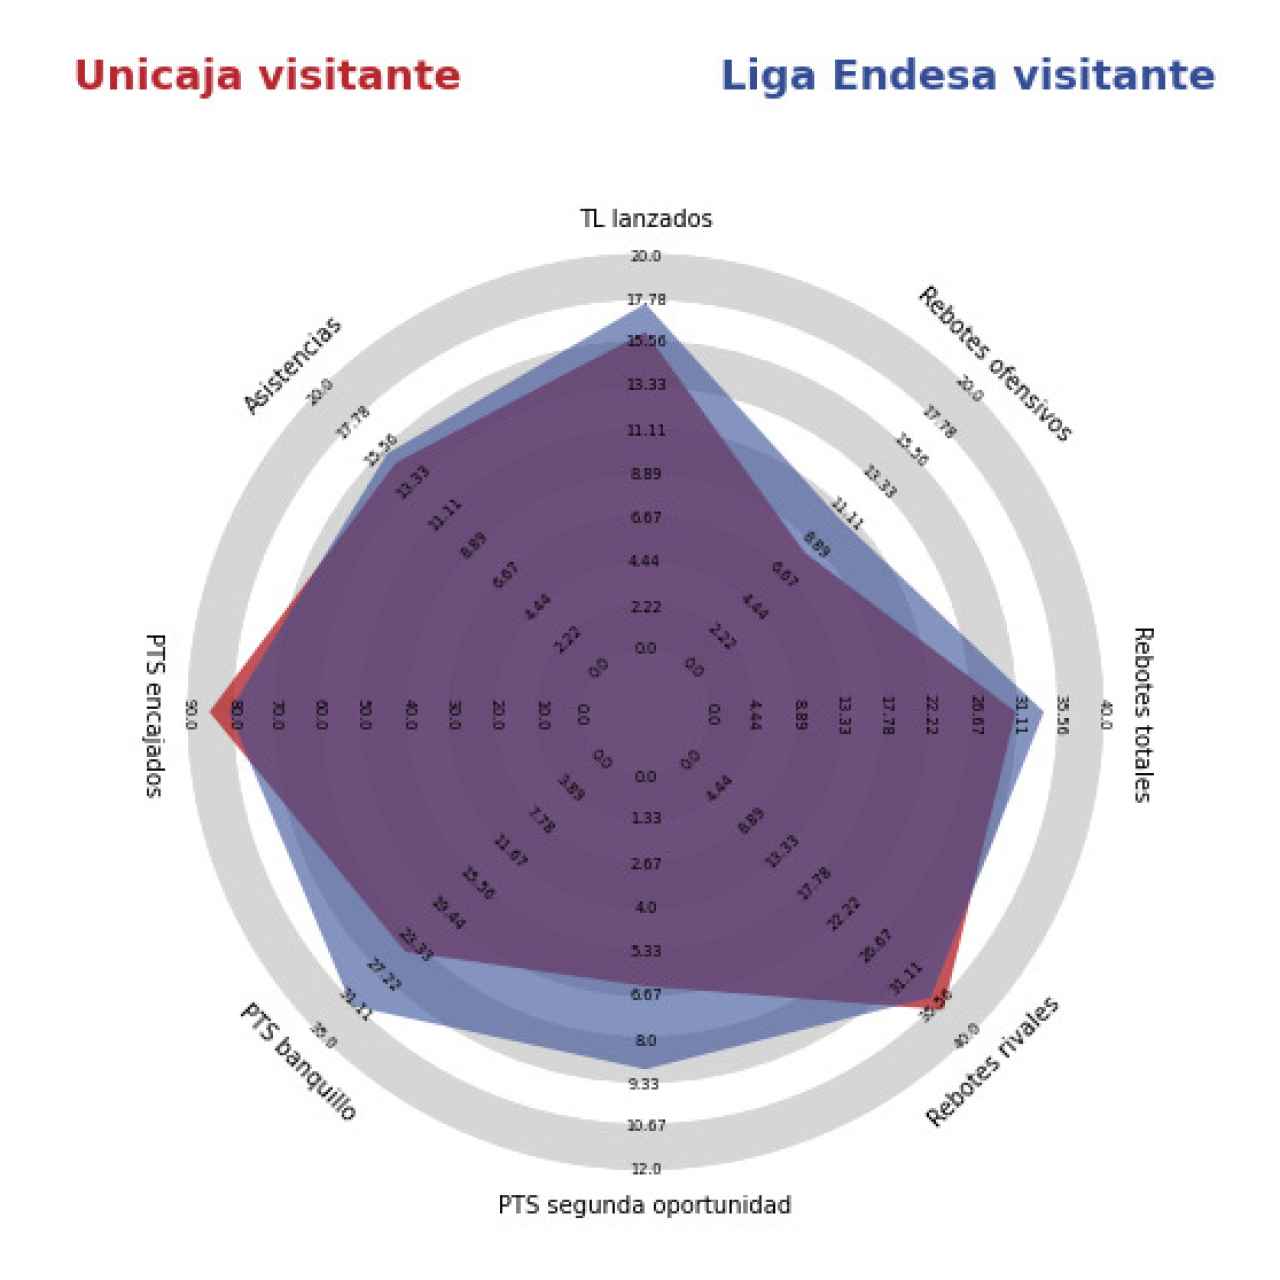 Comparación entre el Unicaja y el resto de equipos de la Liga Endesa como visitantes.